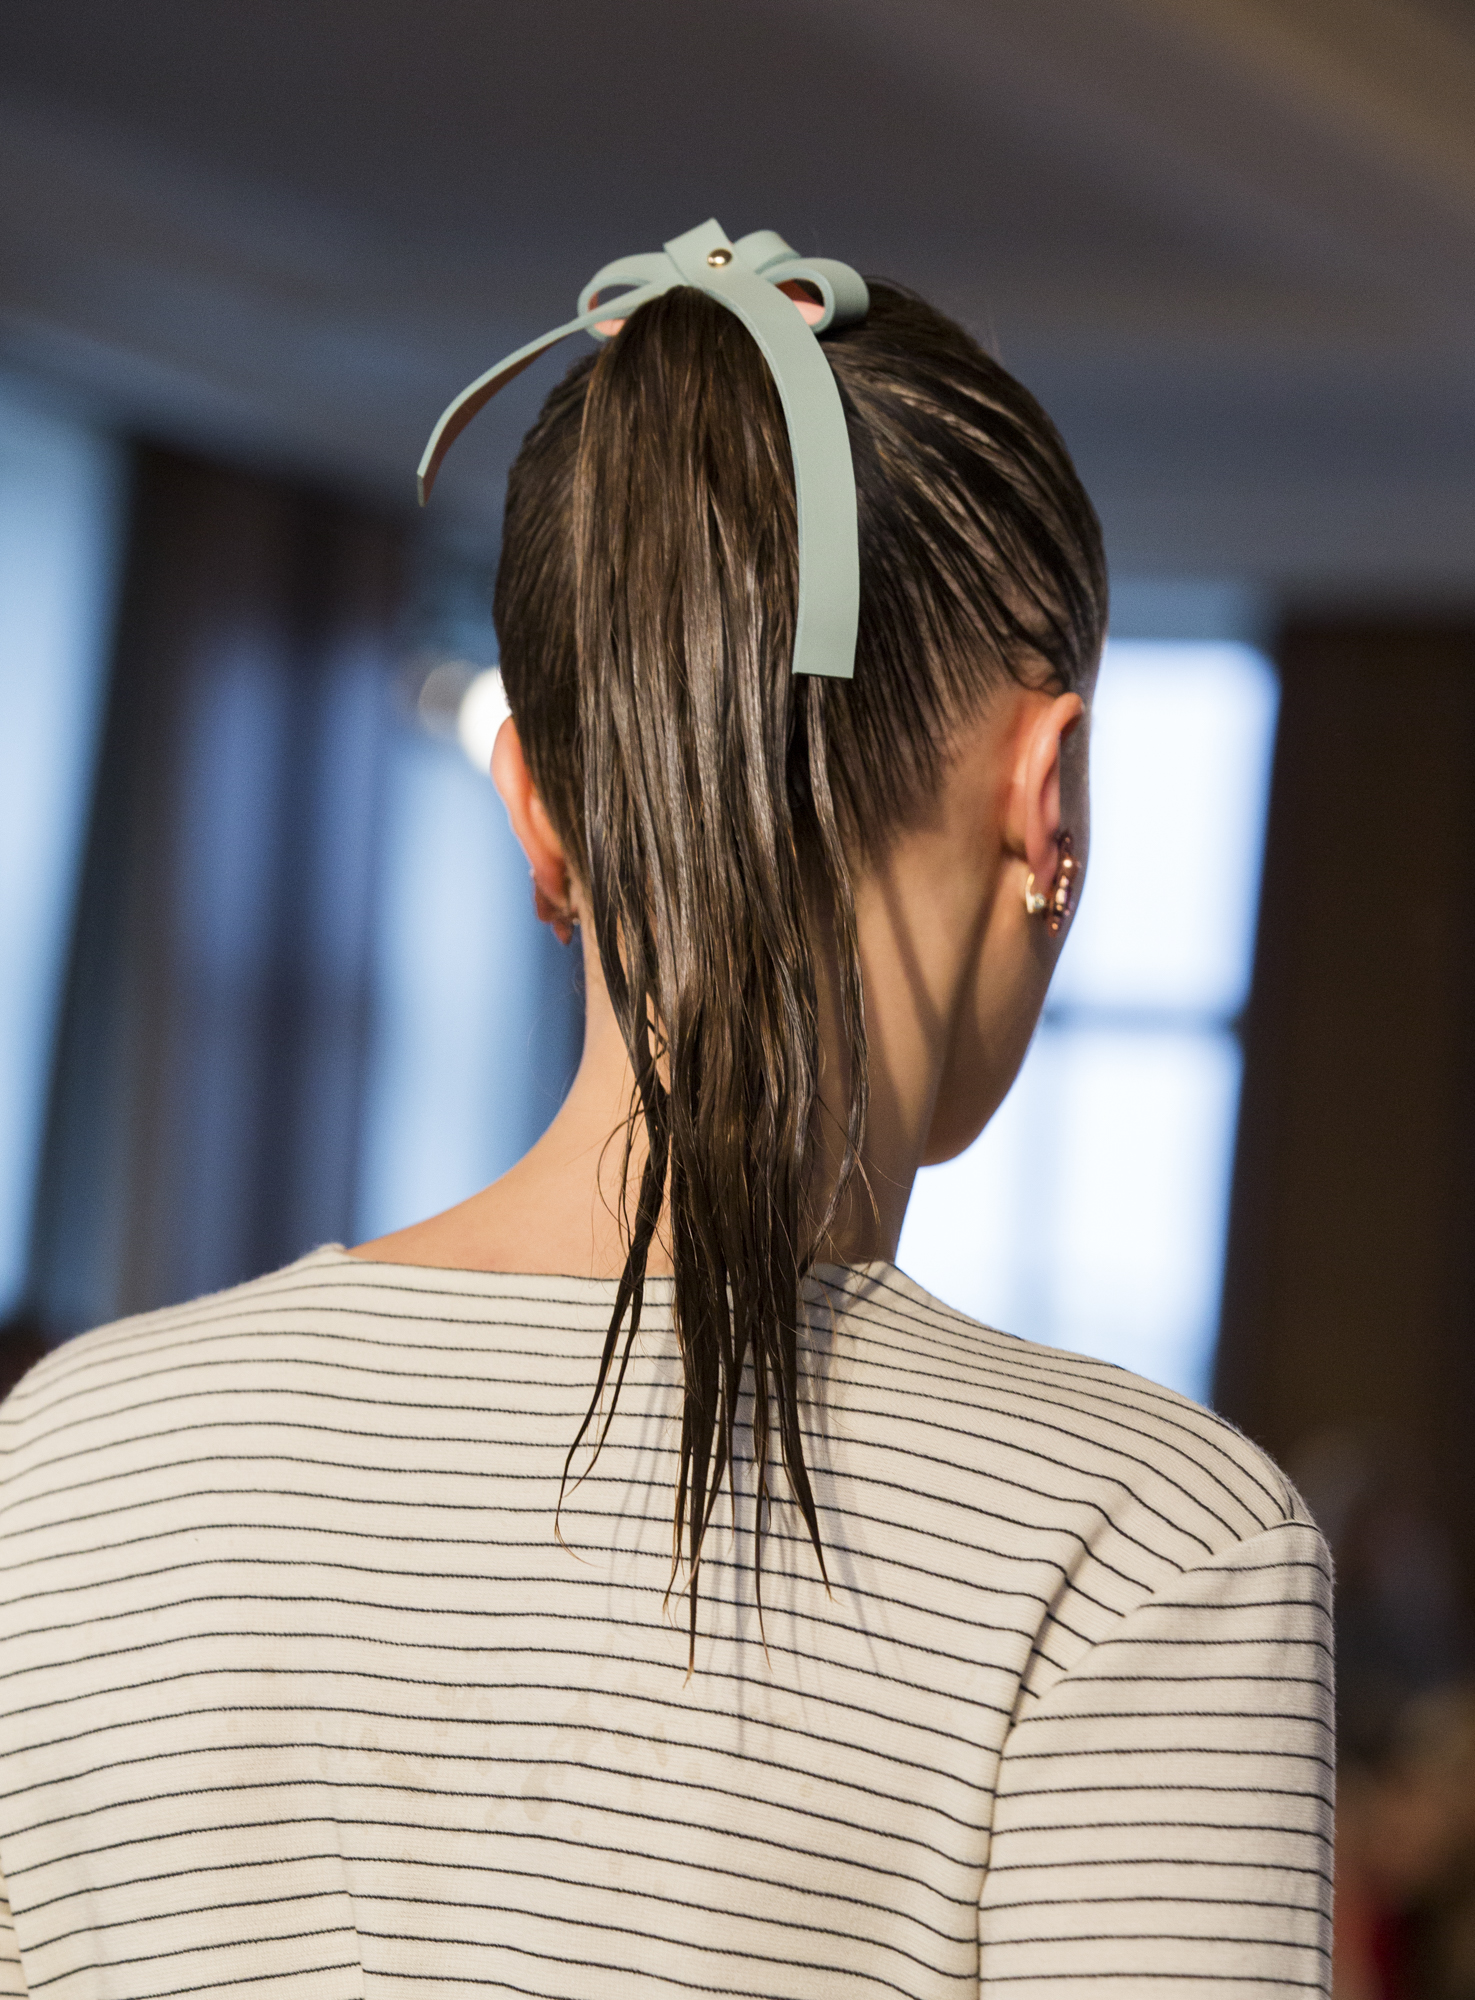 Wella Professionals als Haarpartner für Marina Hoermanseder beim DER BERLINER MODE SALON auf der Berlin Fashion Week am 21.1.2016. Foto: Gero Breloer für WELLA